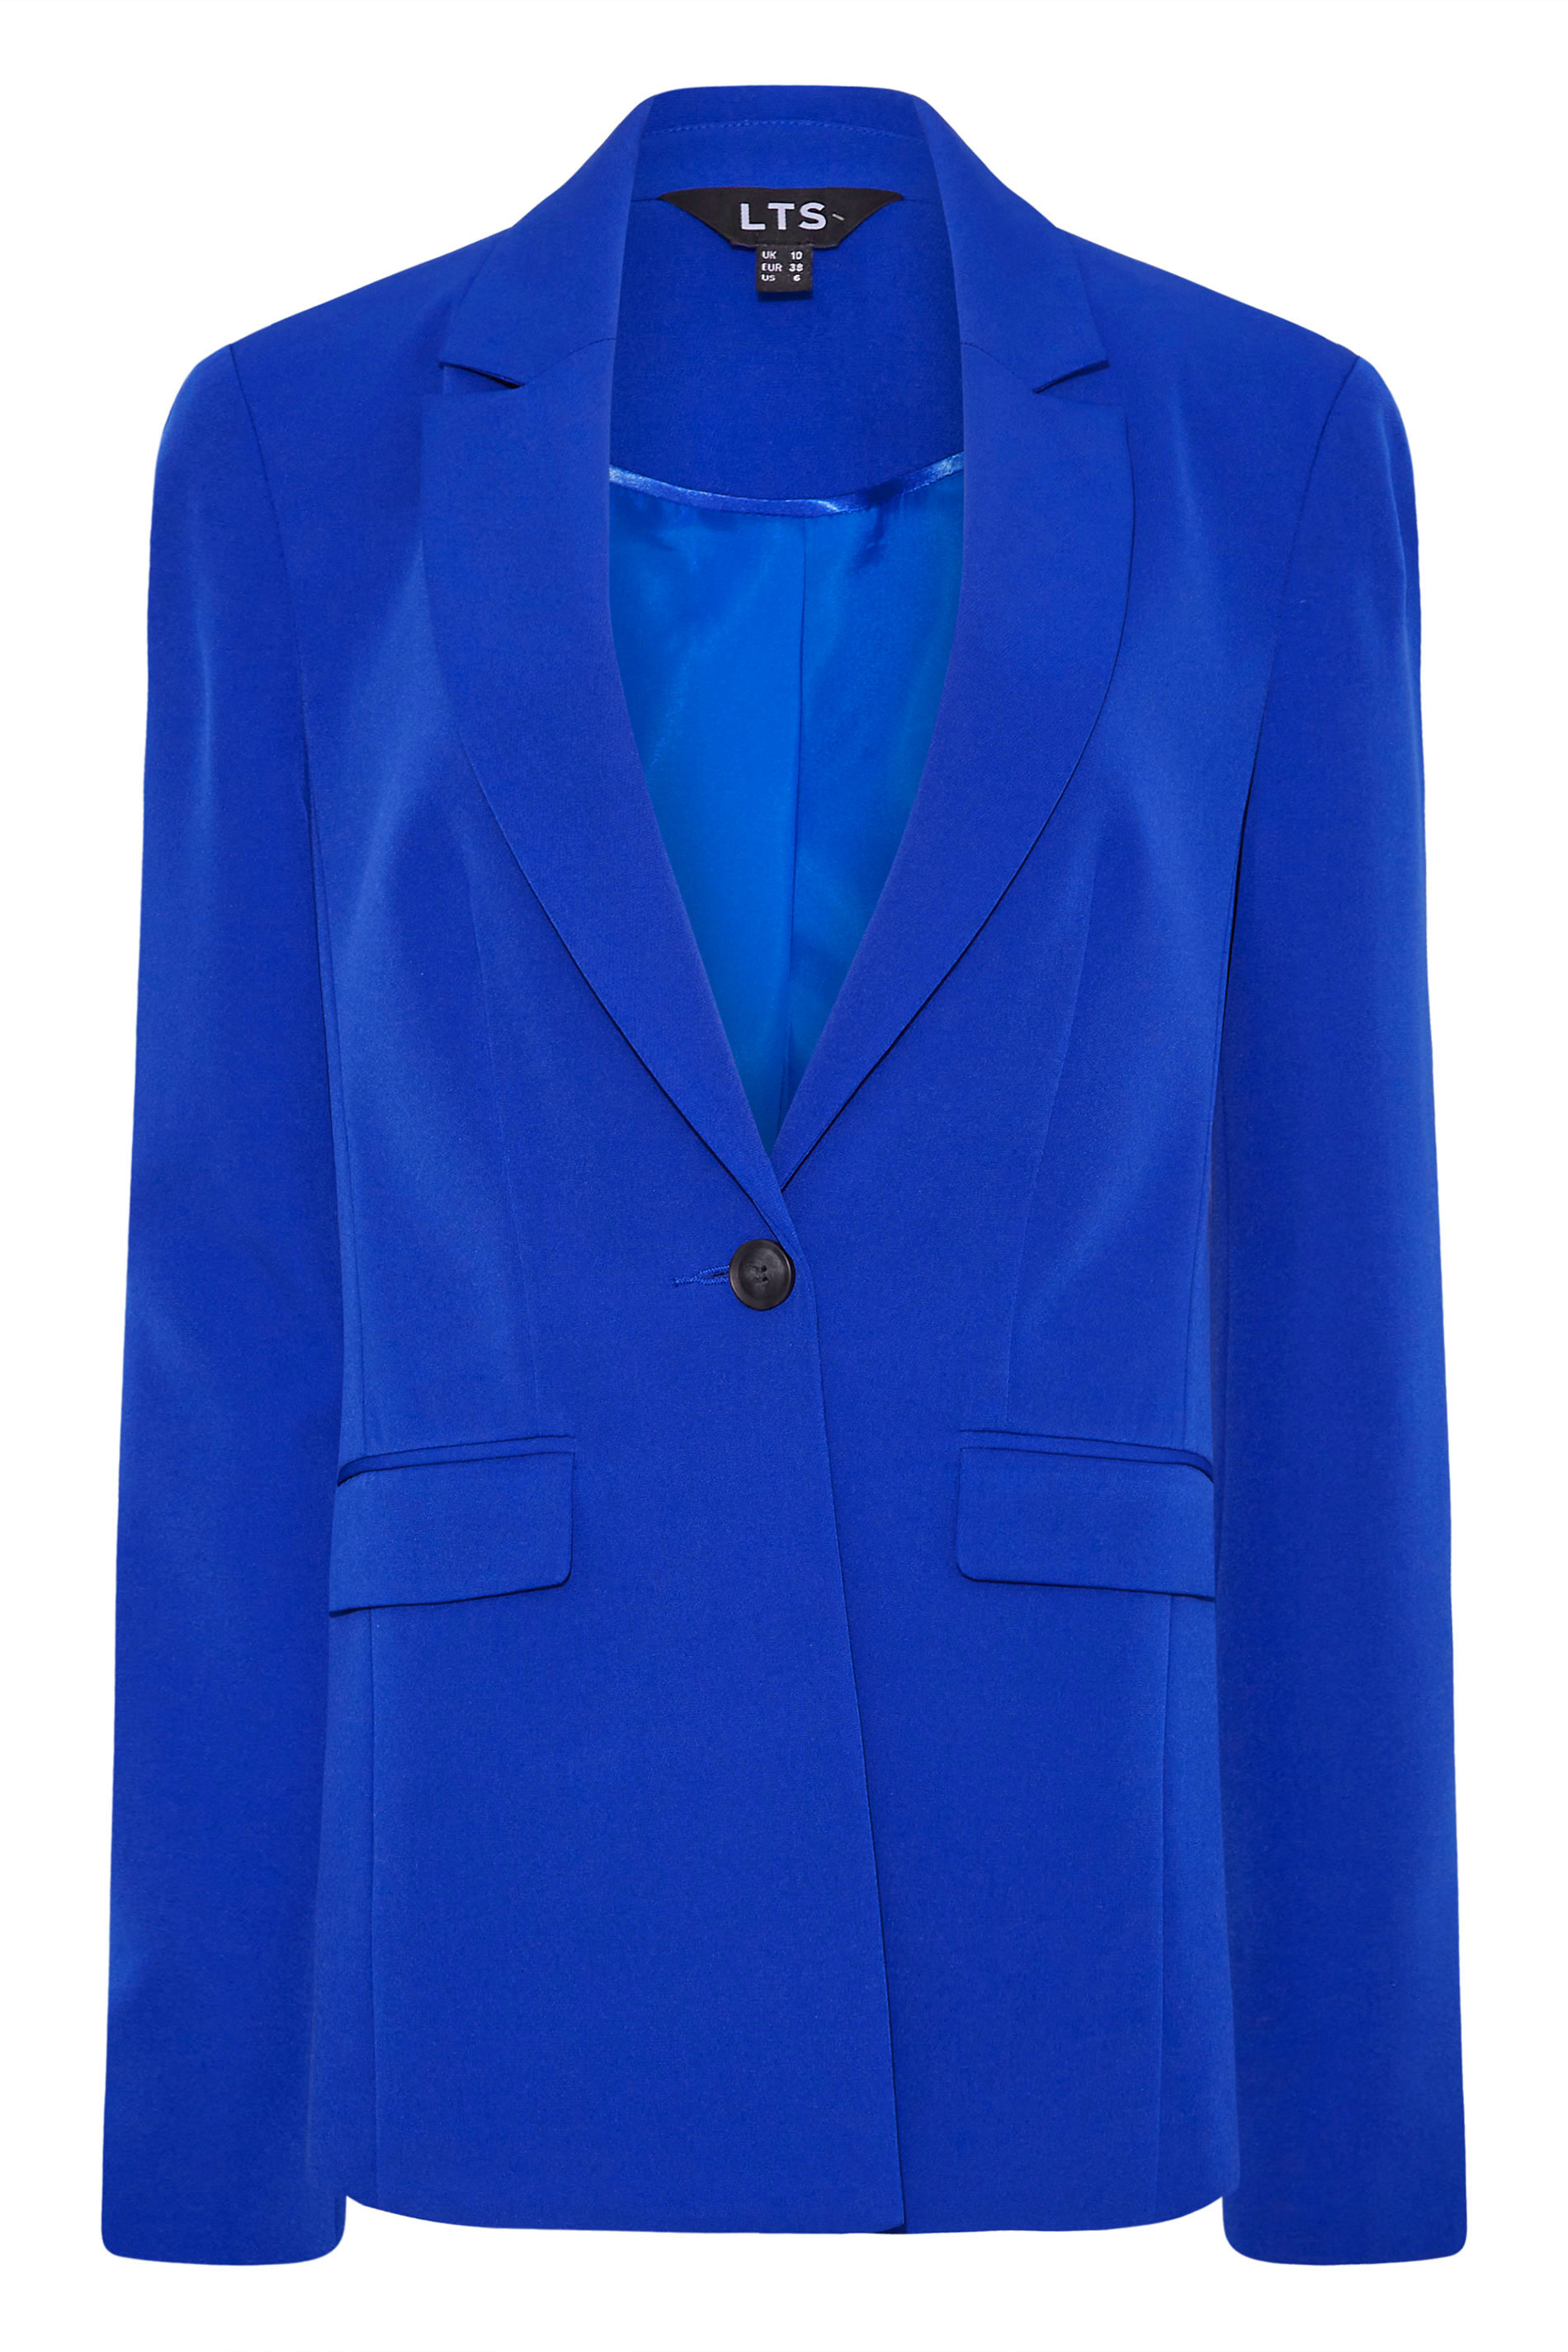 LTS Tall Women's Cobalt Blue Scuba Crepe Blazer | Long Tall Sally